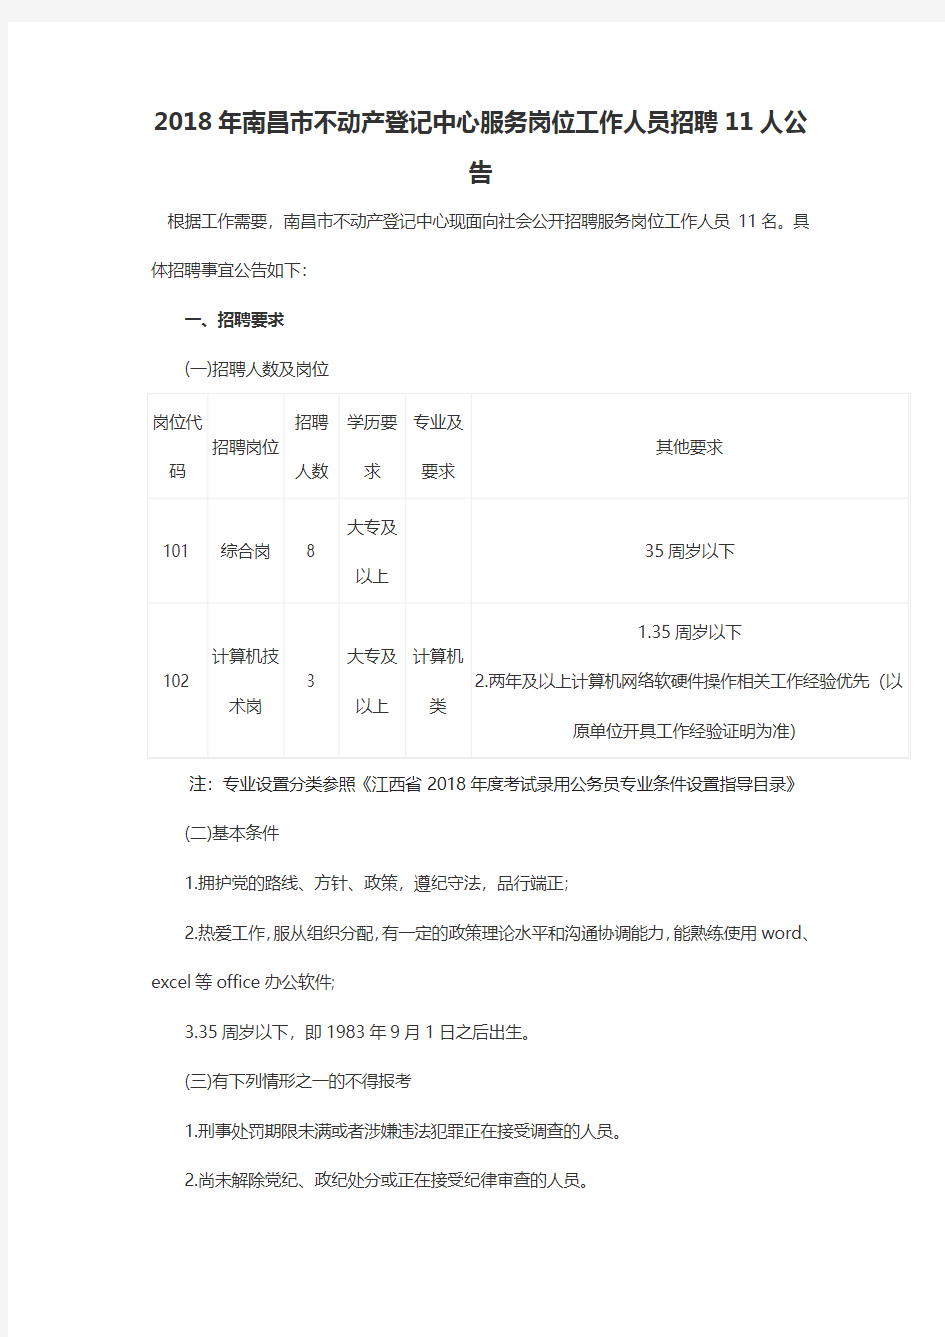 2018年南昌市不动产登记中心服务岗位工作人员招聘11人公告